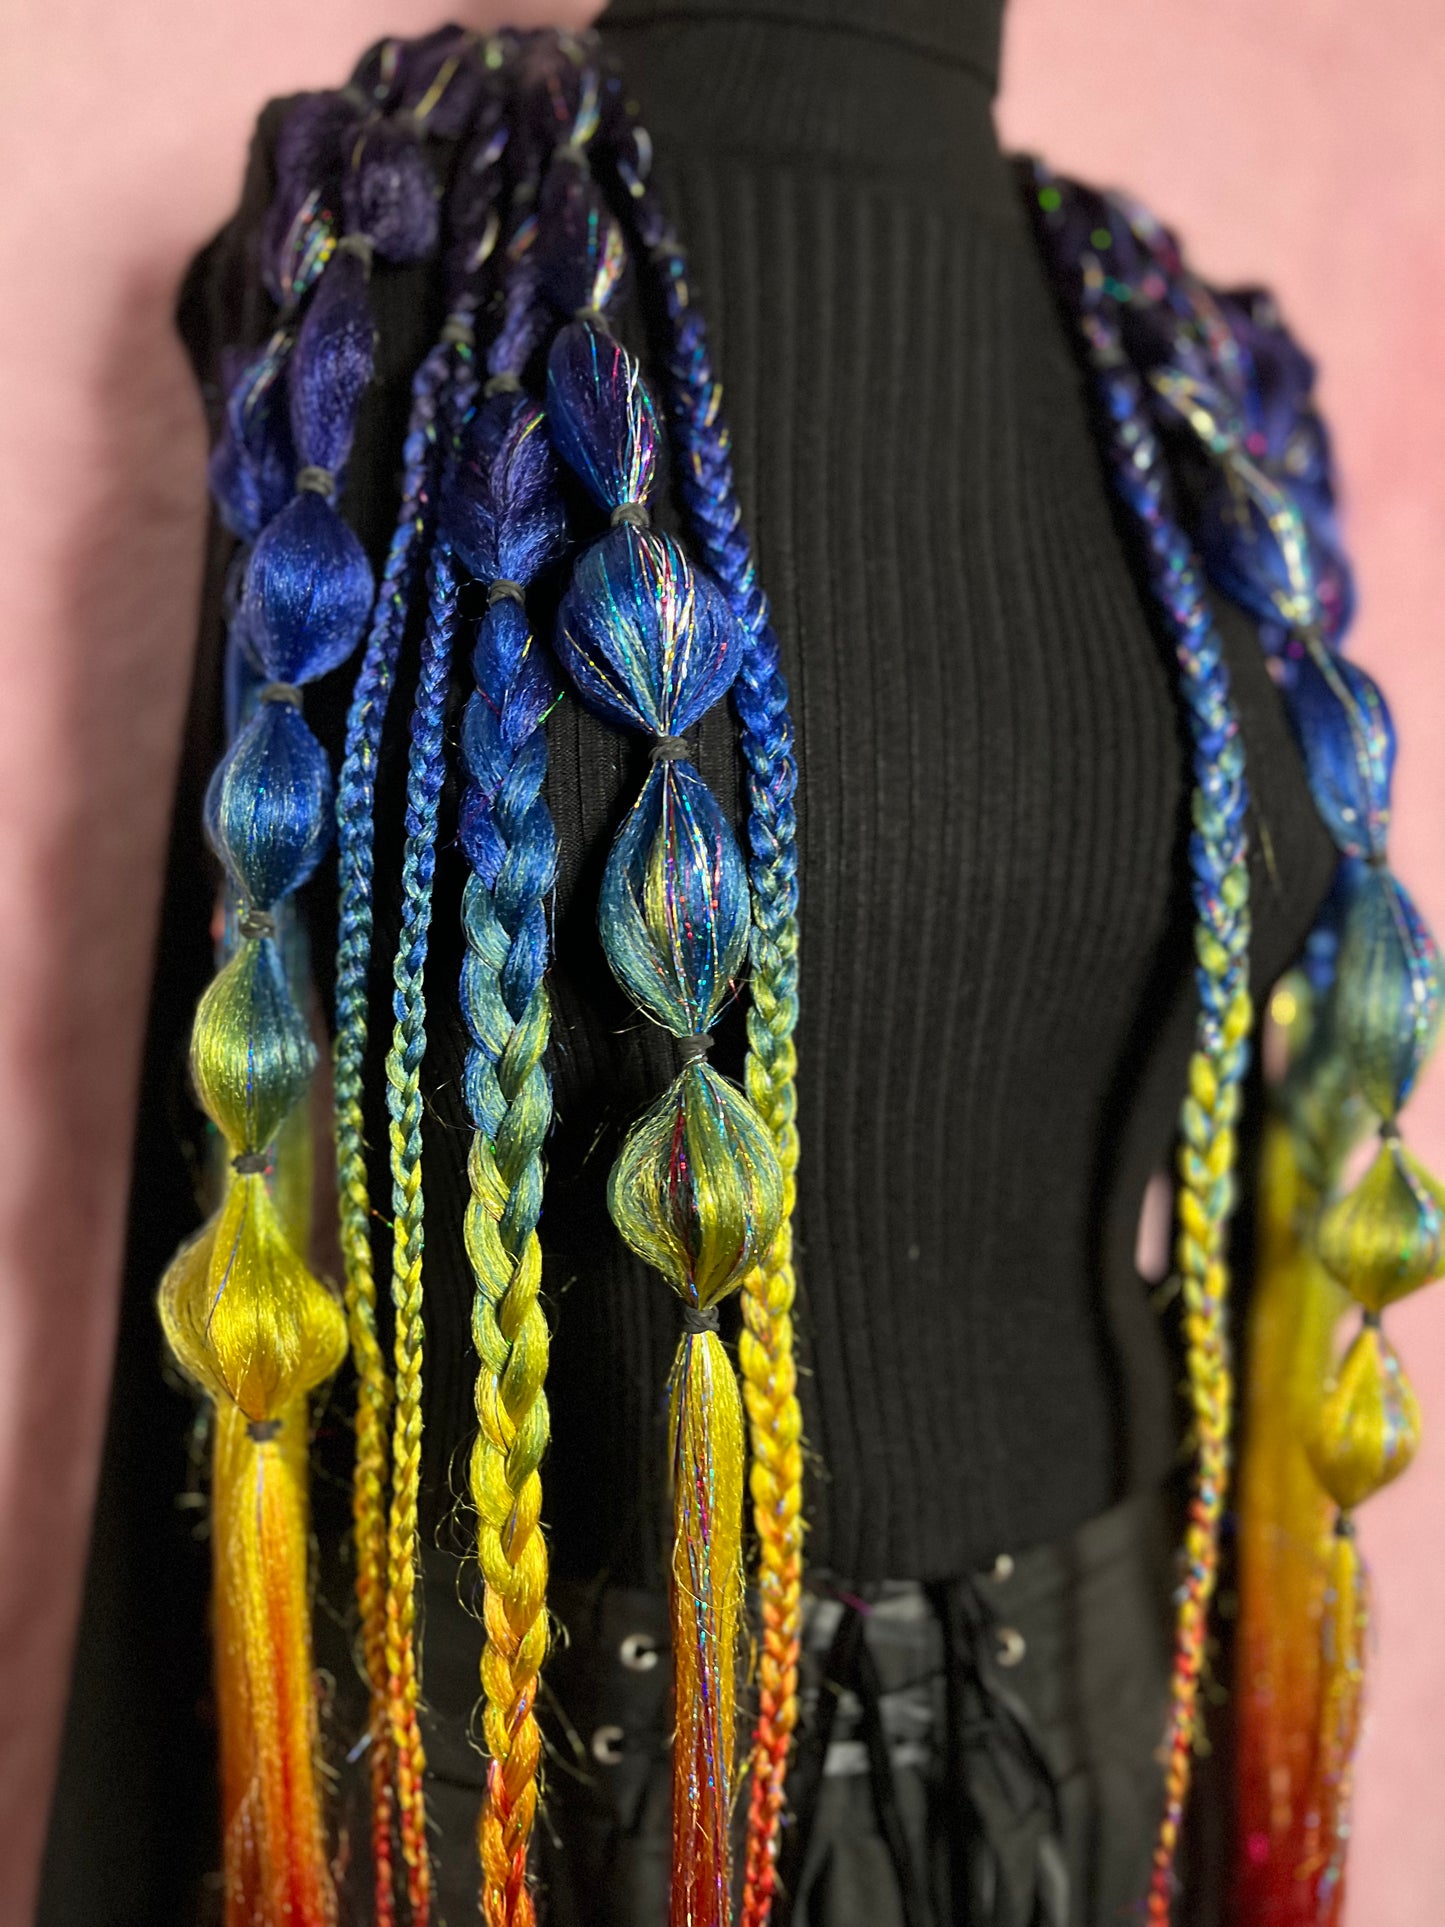 Rainbow tie in hair extensions